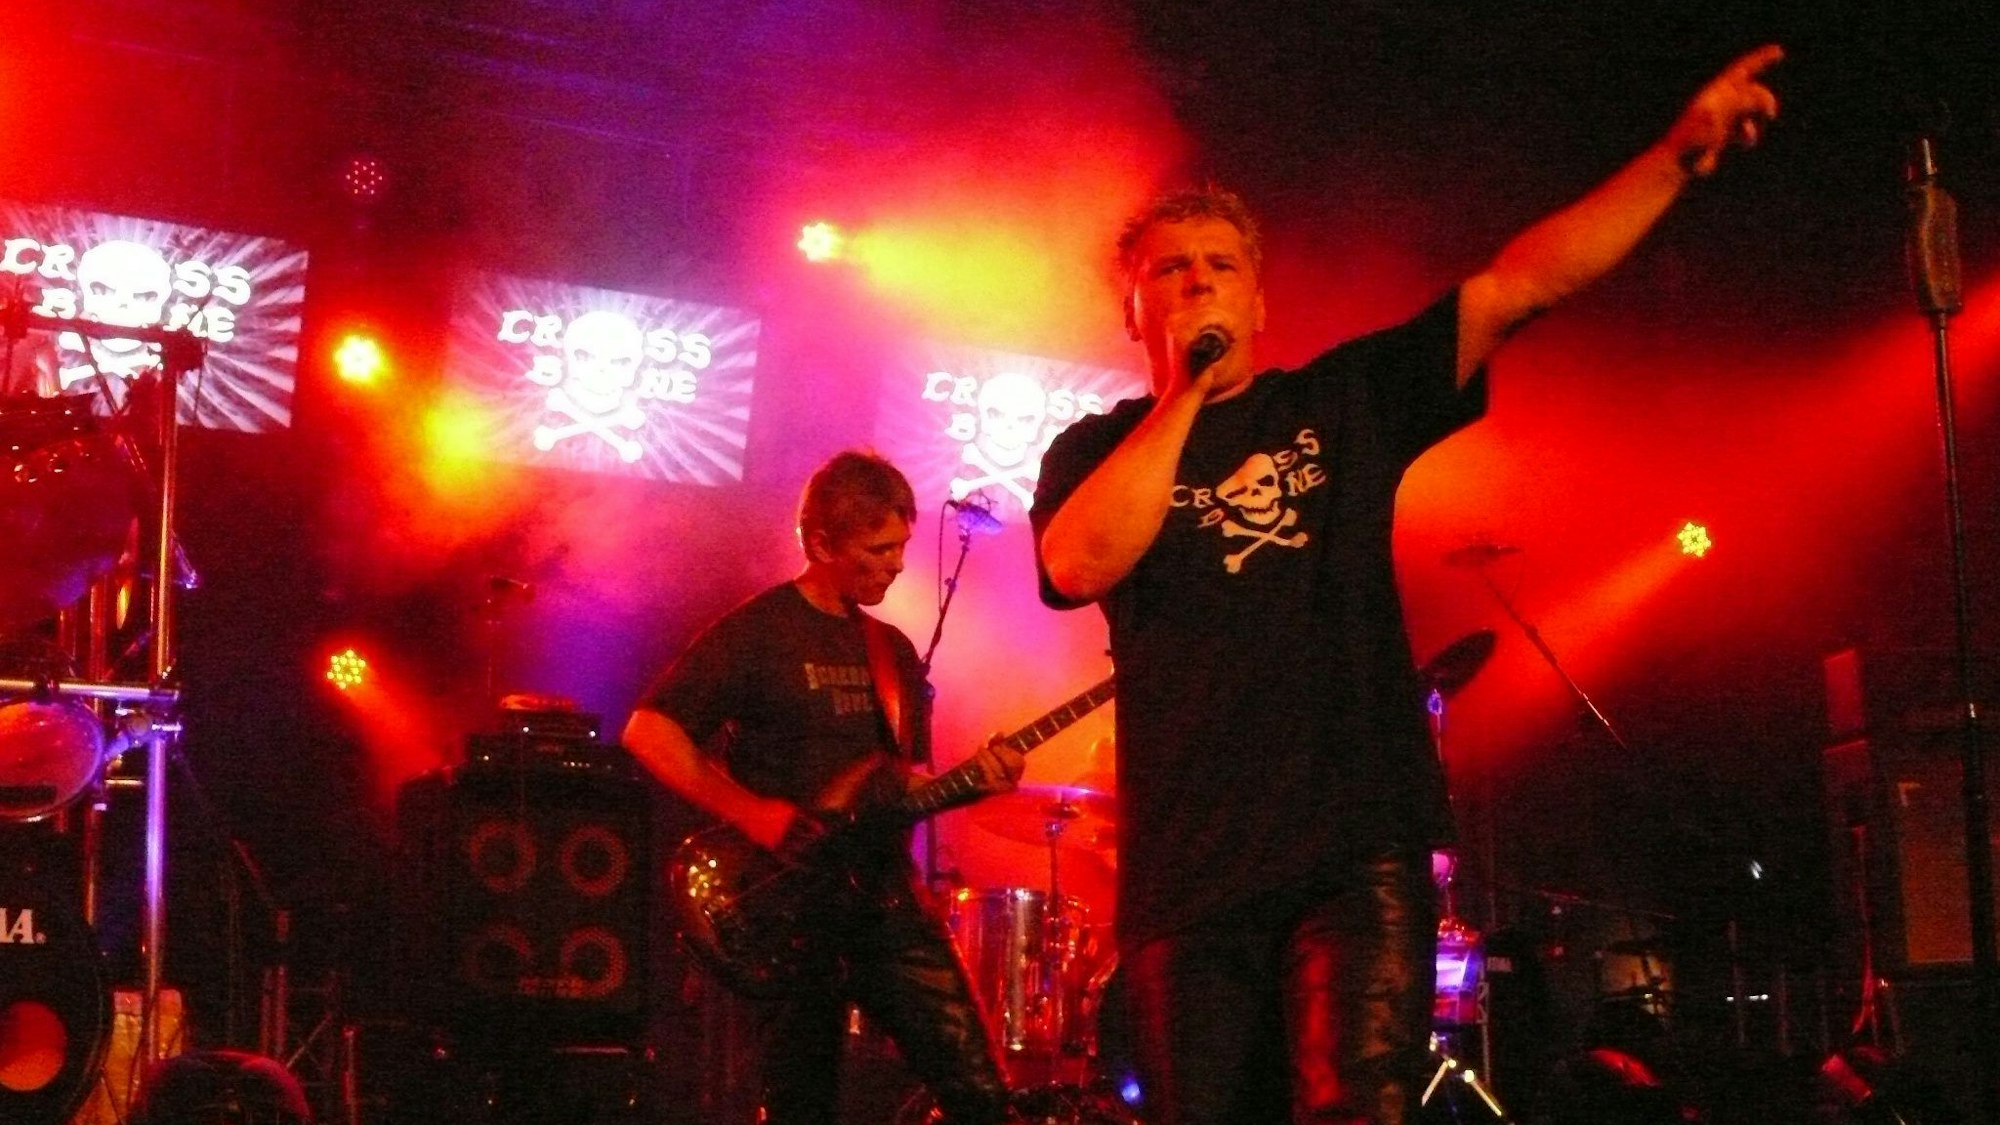 Rockmusiker spielen auf einer rot ausgeleuchteten Bühne.